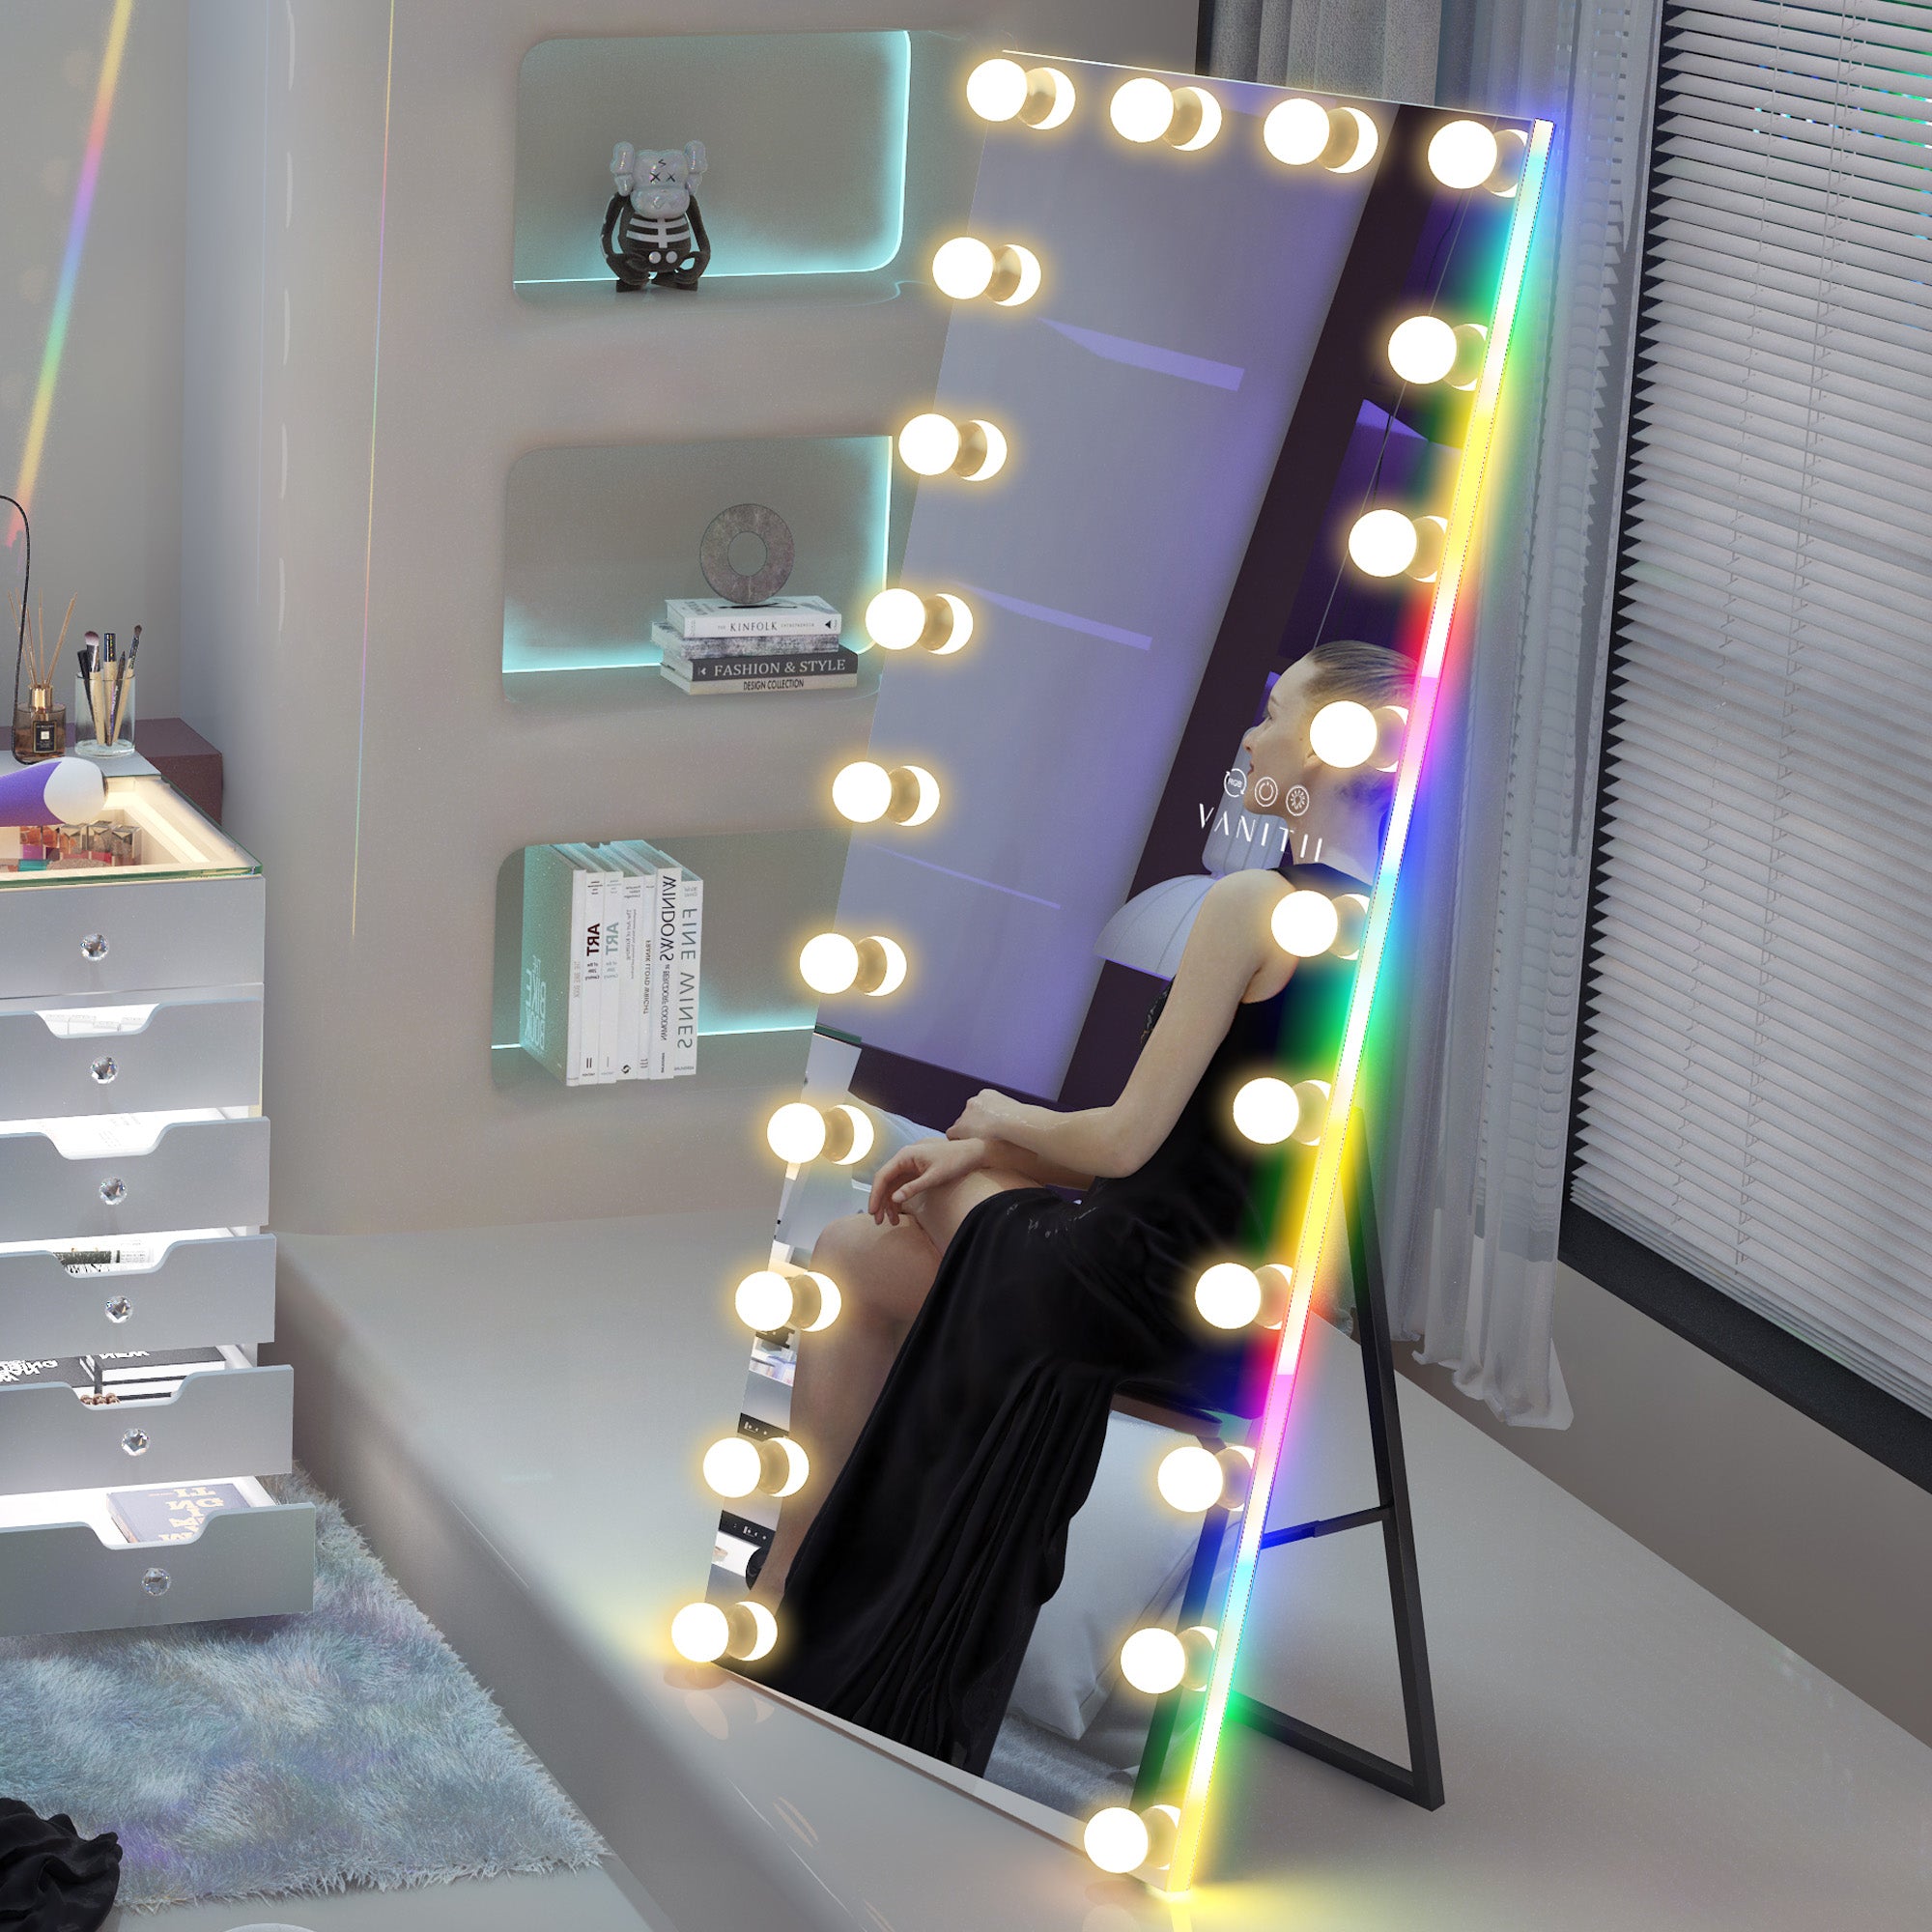 VANITII Hollywood Vanity Mirror - Full Length Vanity Mirror with RGB